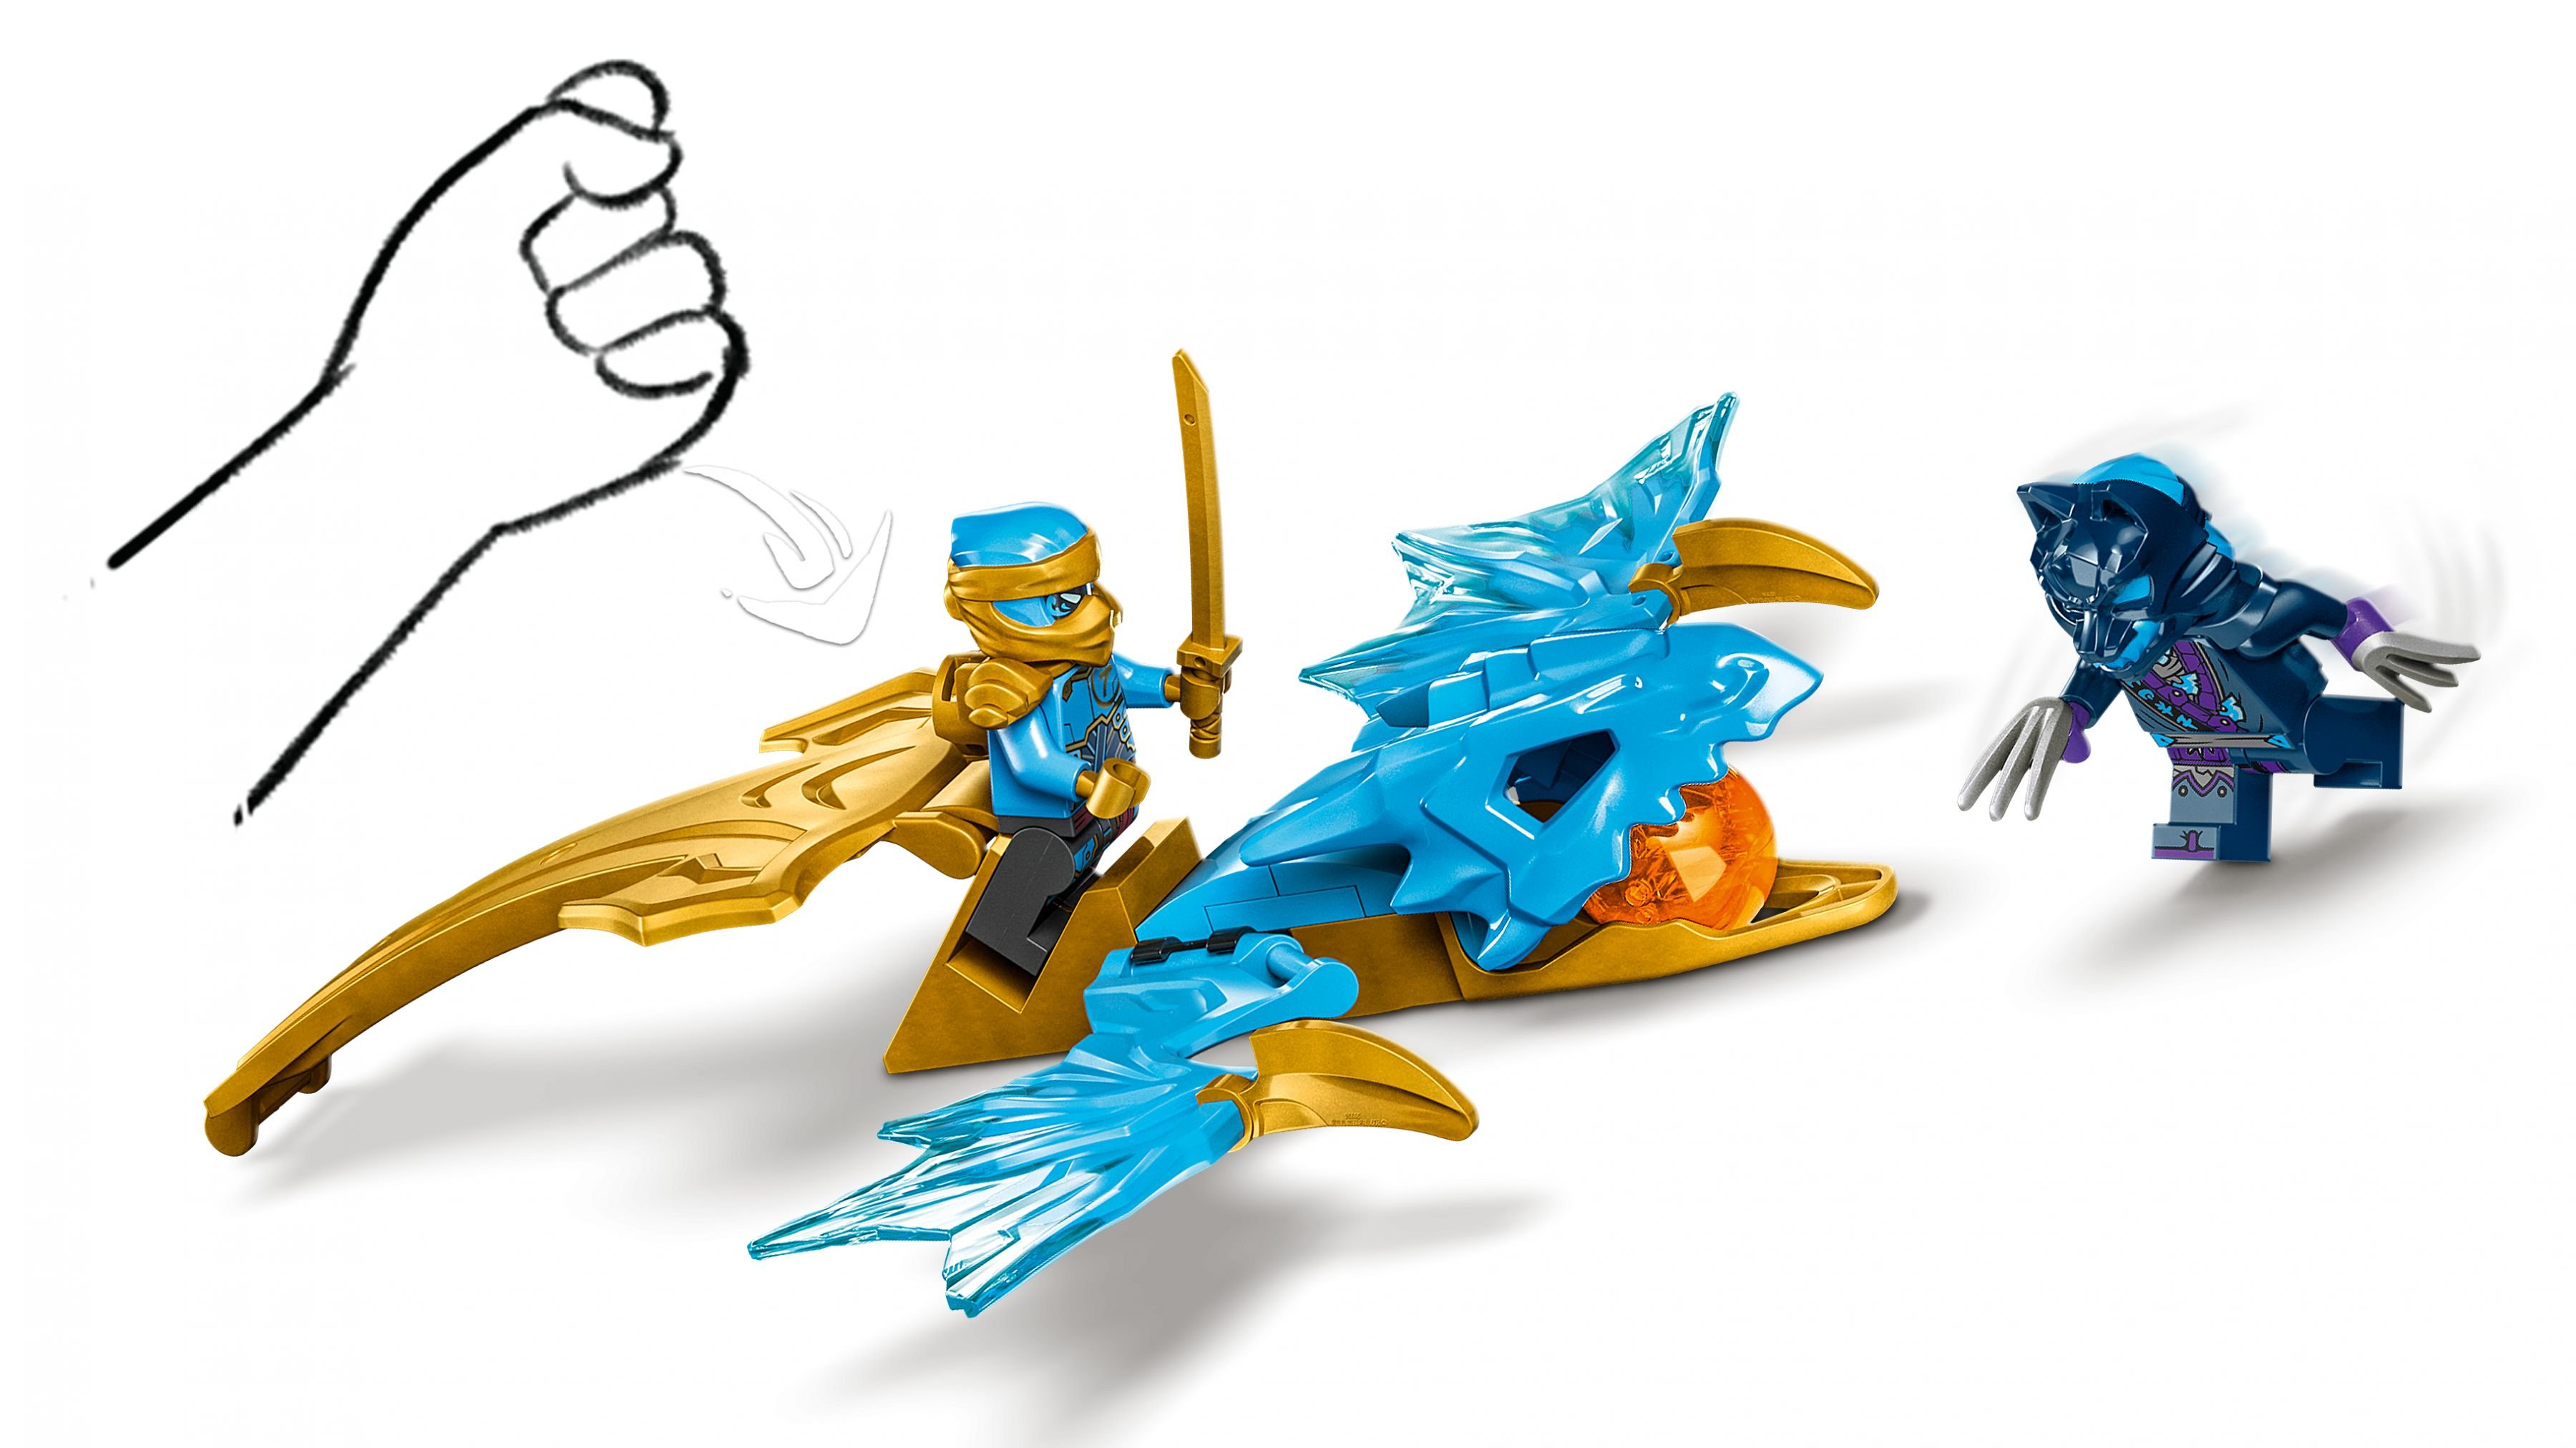 LEGO Ninjago 71802 Nyas Drachengleiter LEGO_71802_web_sec02_nobg.jpg